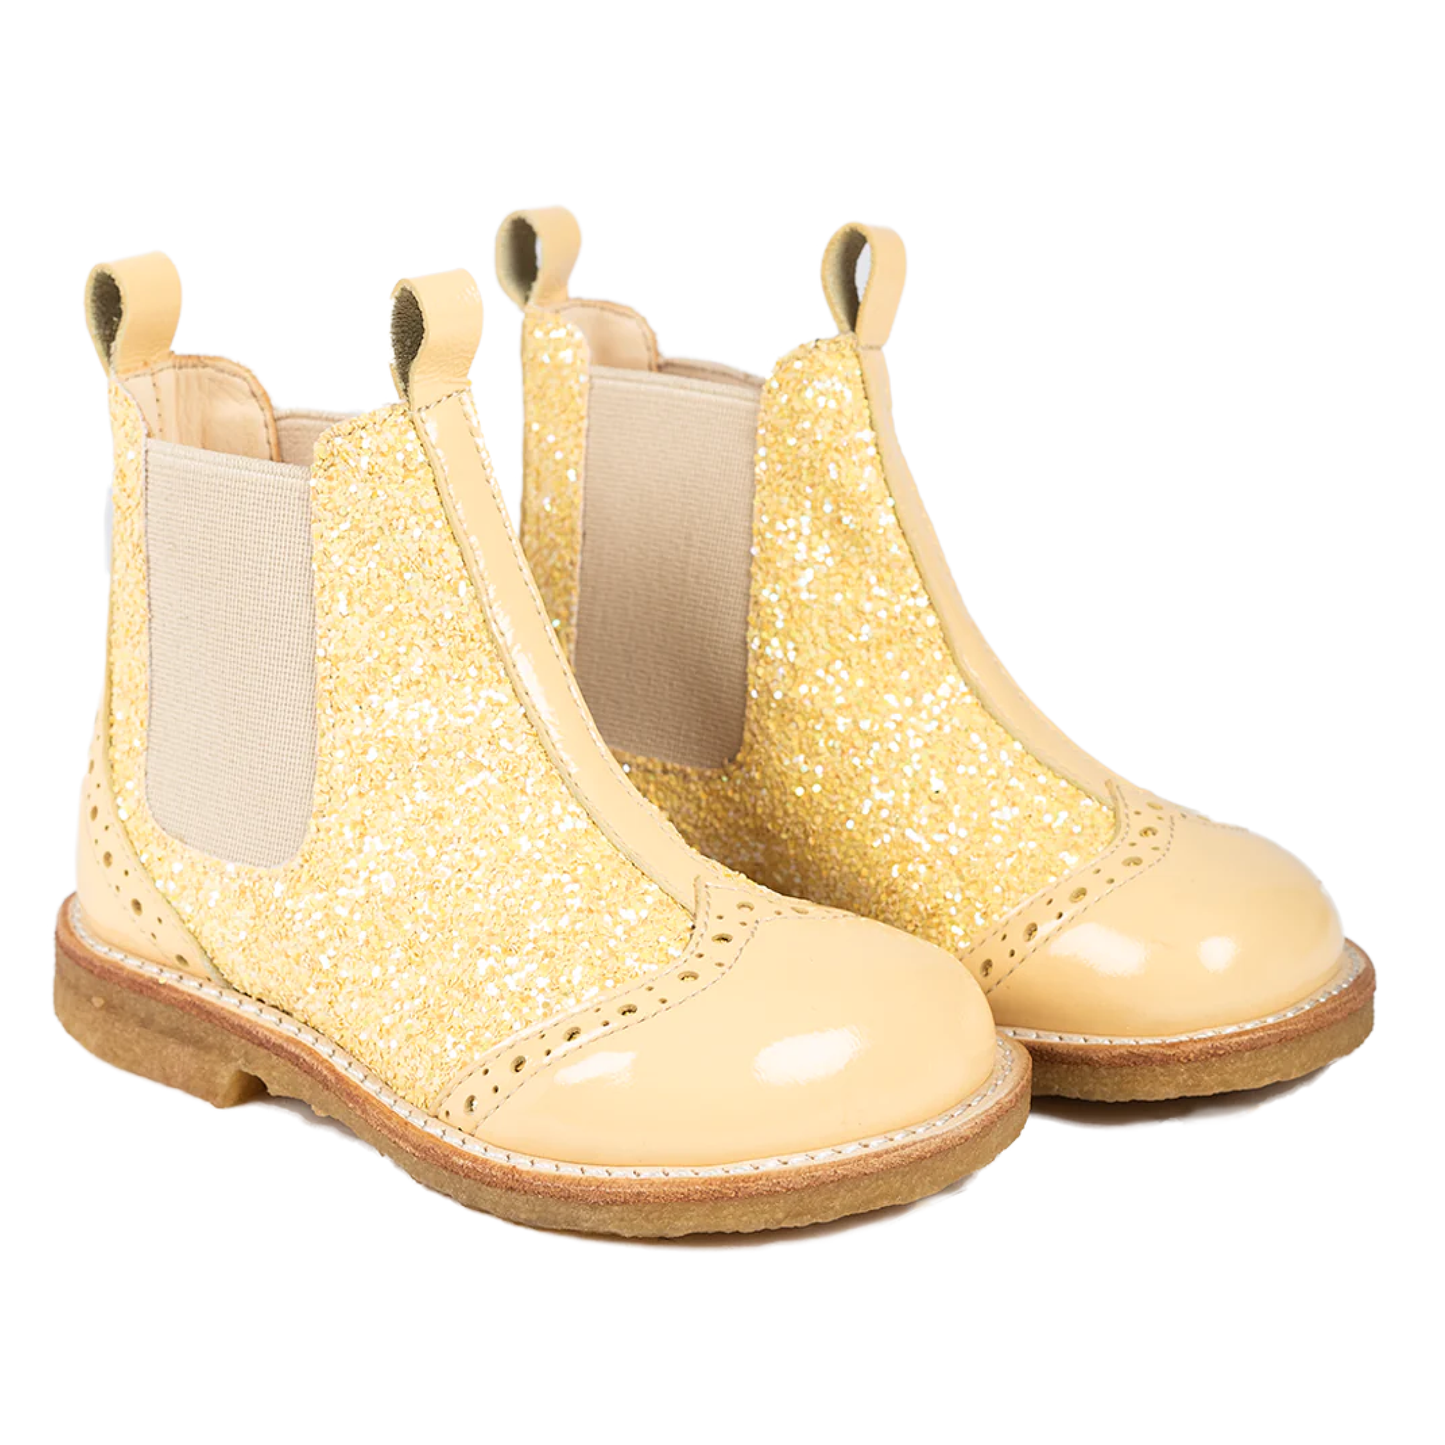 Chelsea Støvle Med Glitter, Yellow/Pineapple